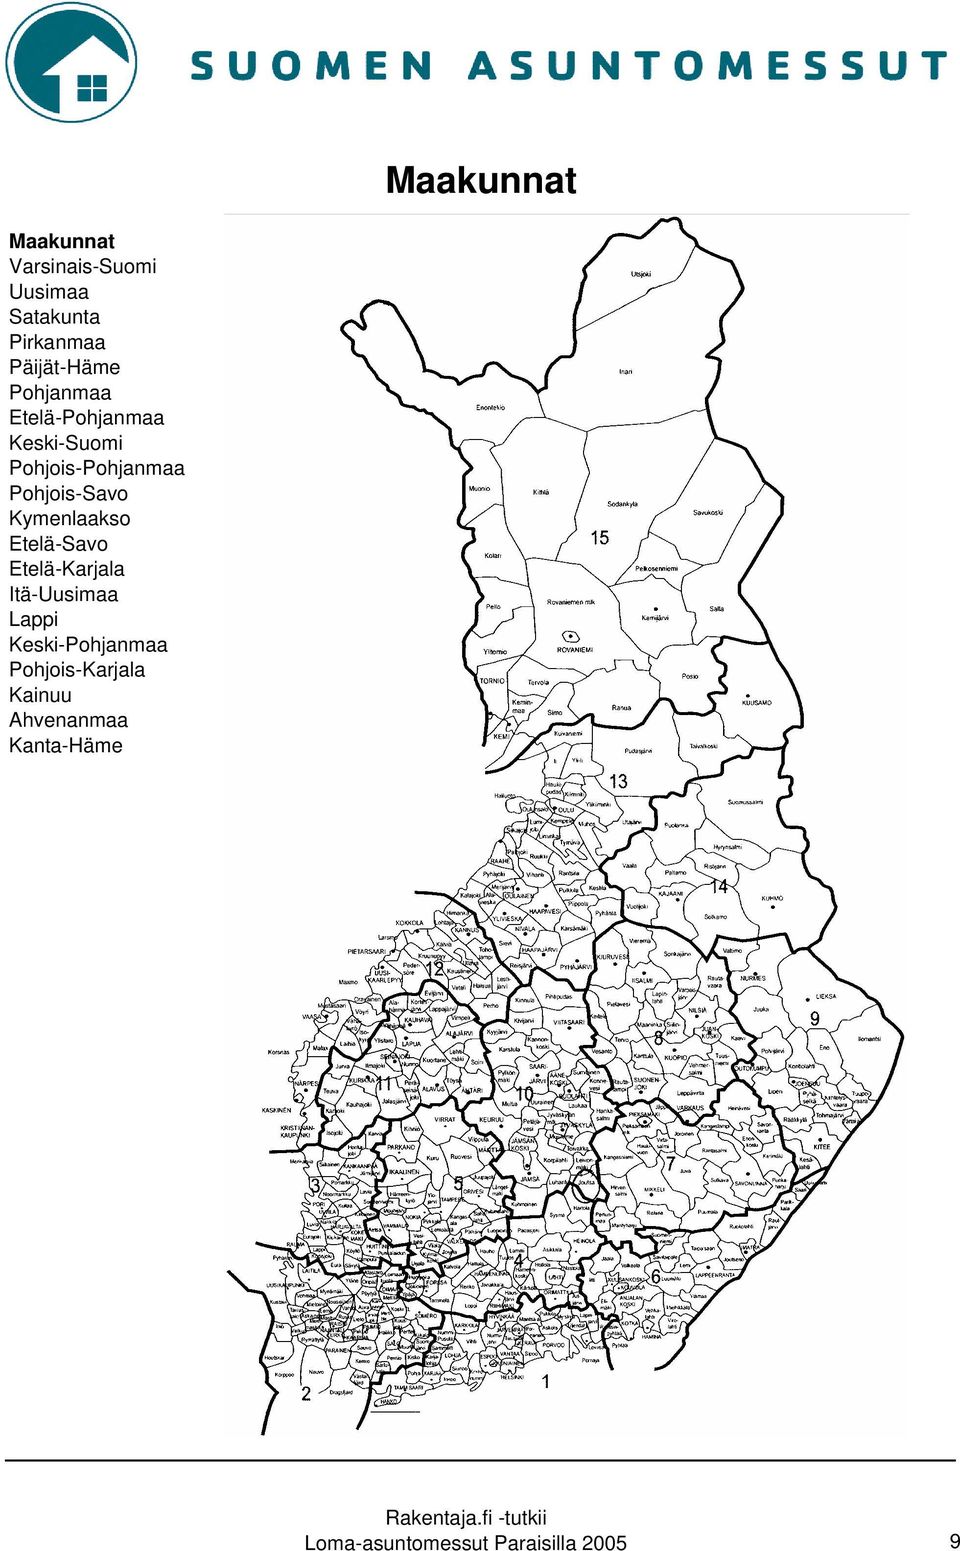 Pohjois-Savo Kymenlaakso Etelä-Savo Etelä-Karjala Itä-Uusimaa Lappi